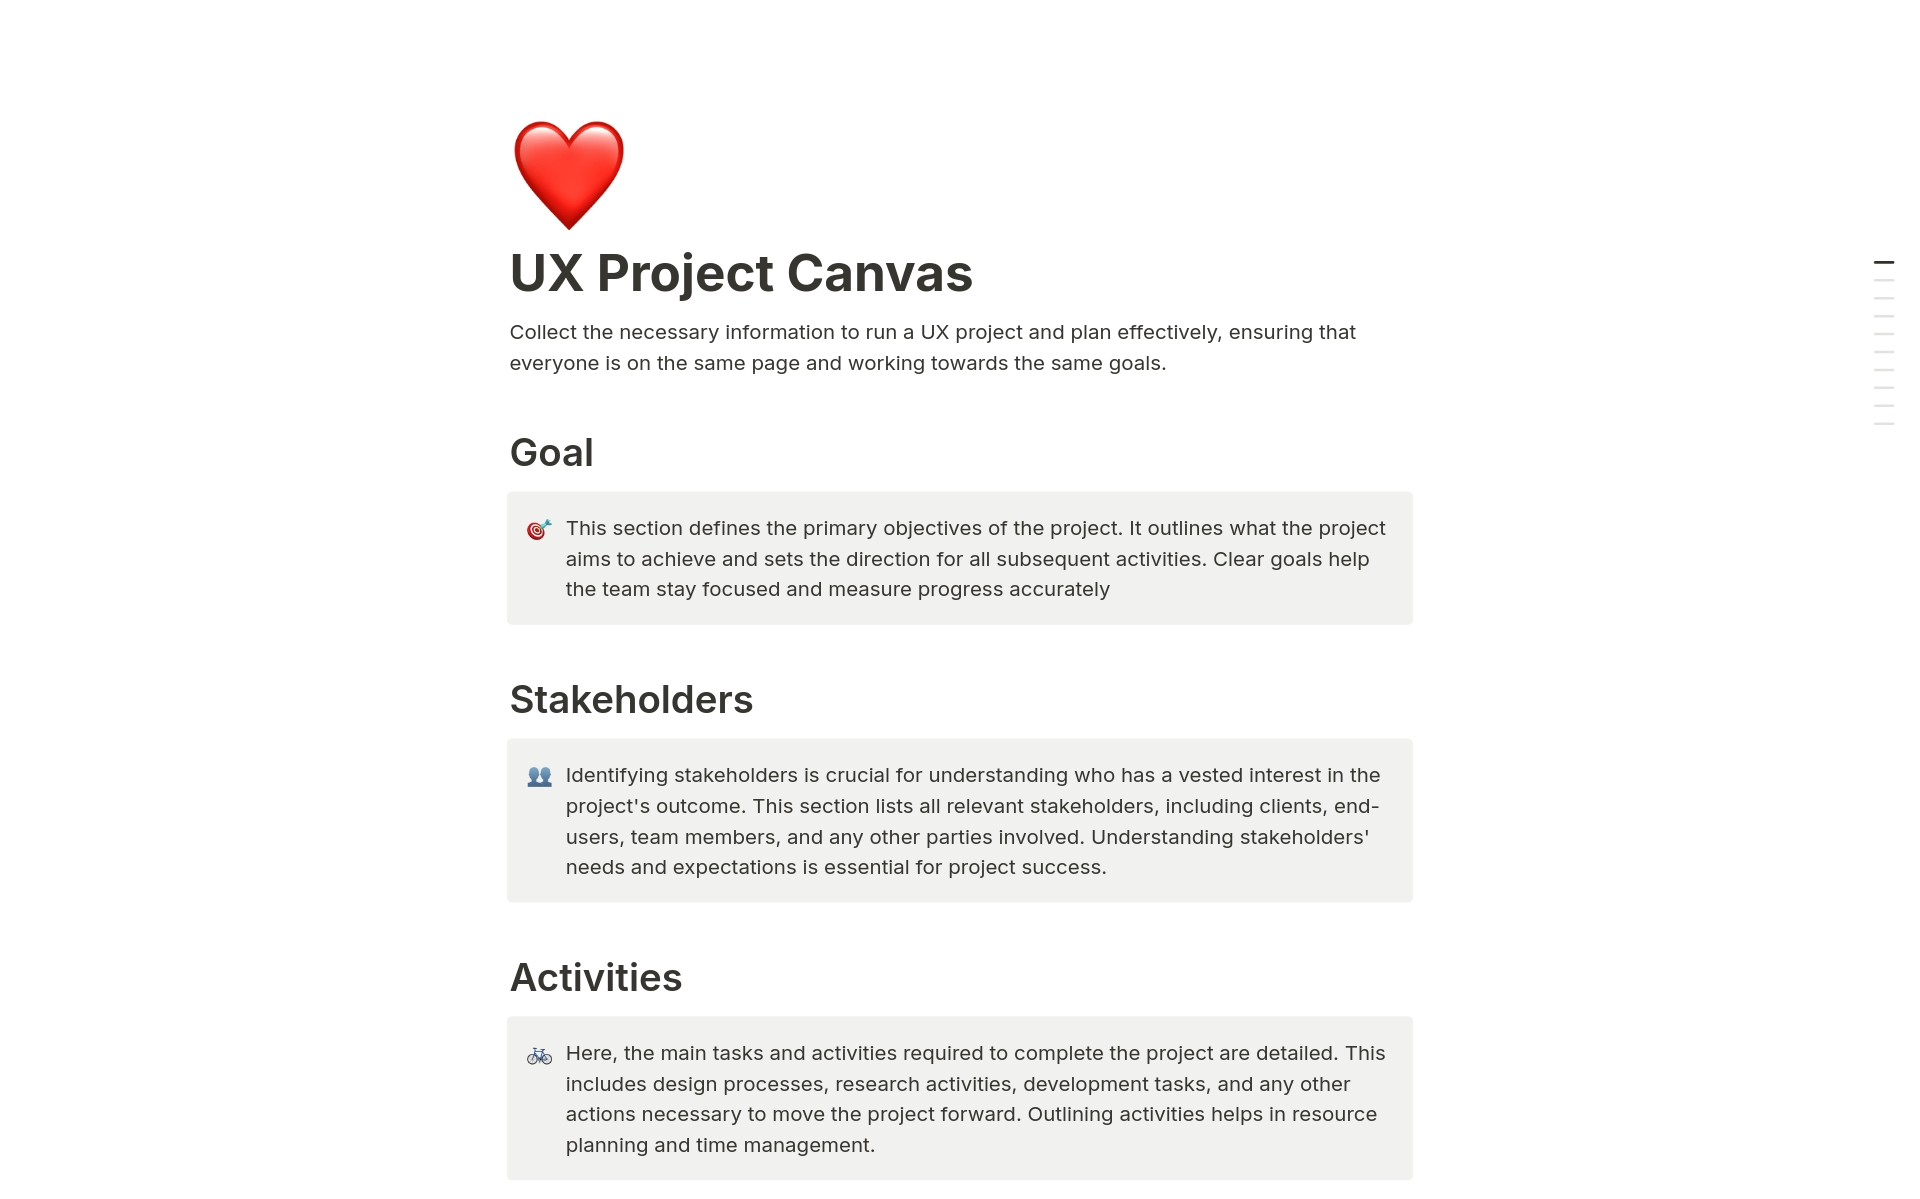 Vista previa de una plantilla para UX Project Canvas 